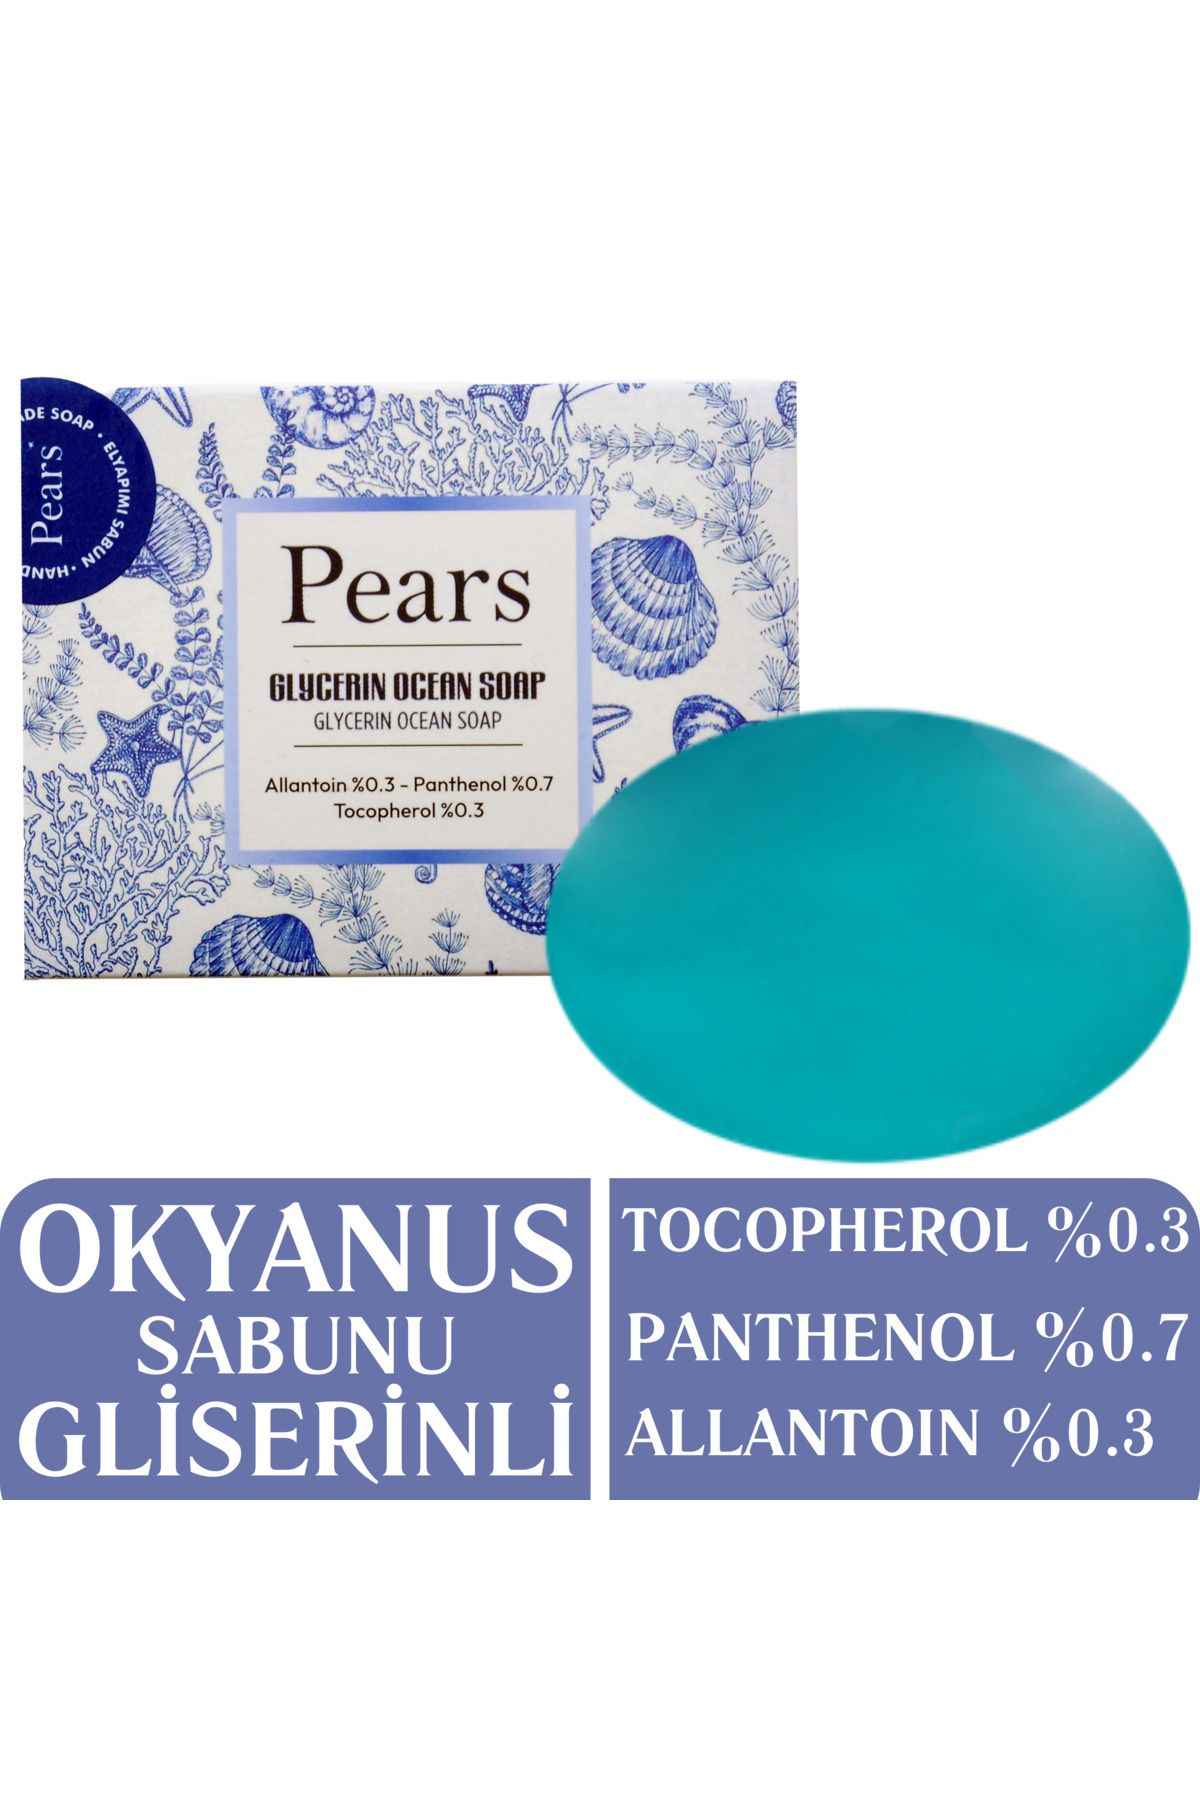 Pears Gliserinli Okyanus Sabunu 120 gr - Ocean Soap With Glycerine 120 gr